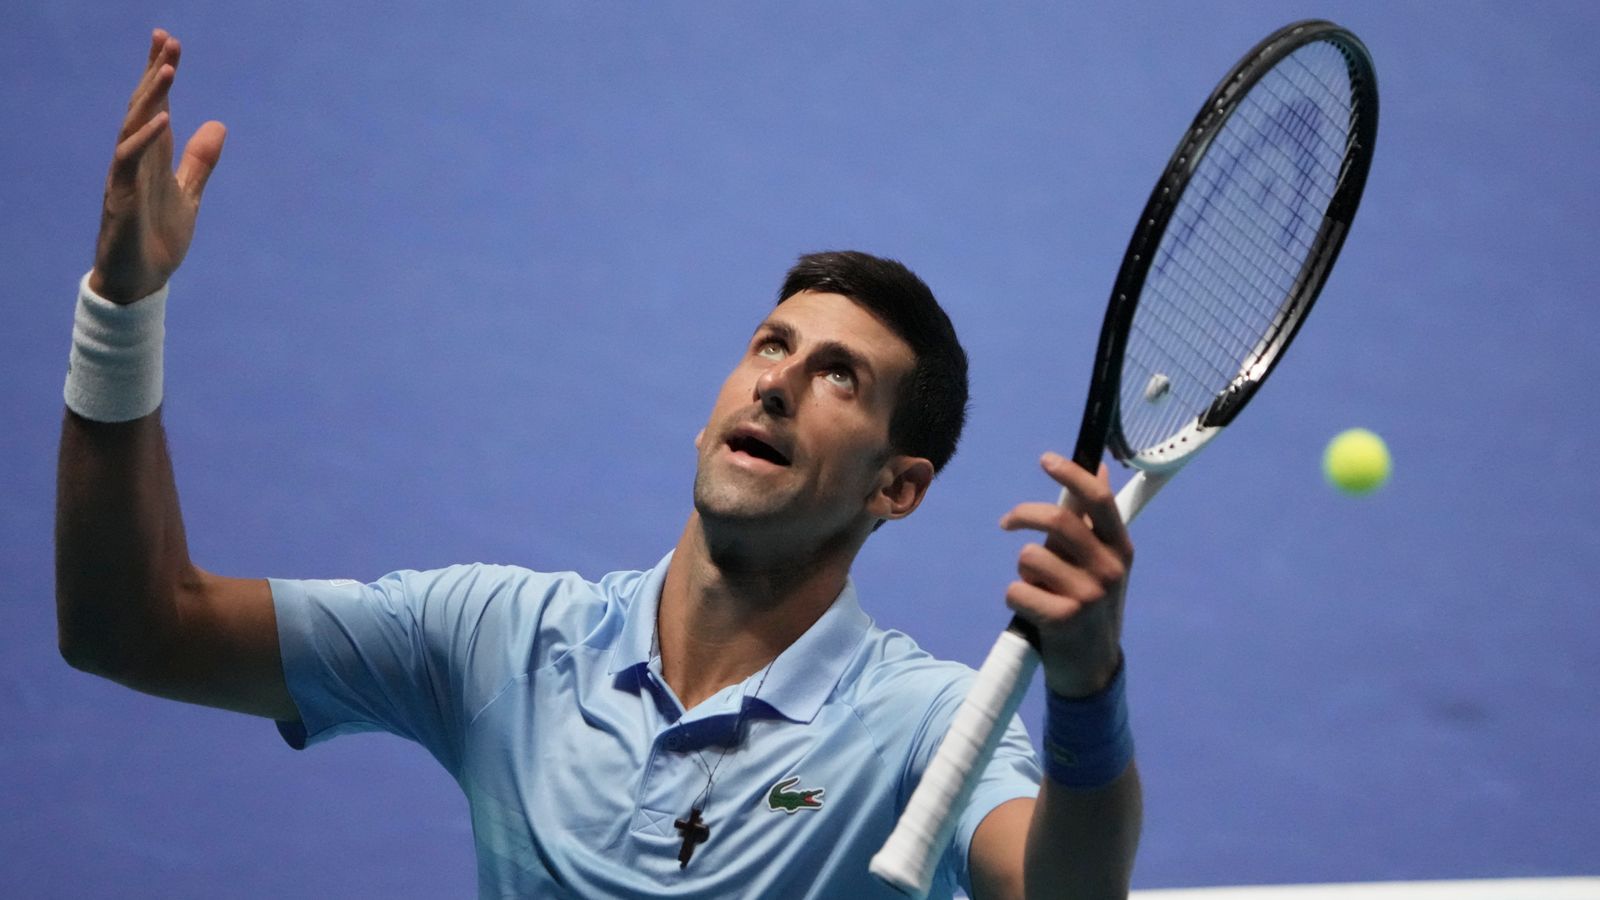 ATP Tour: Novak Djokovic beats Marin Cilic to seal first title since Wimbledon |  Tennis News